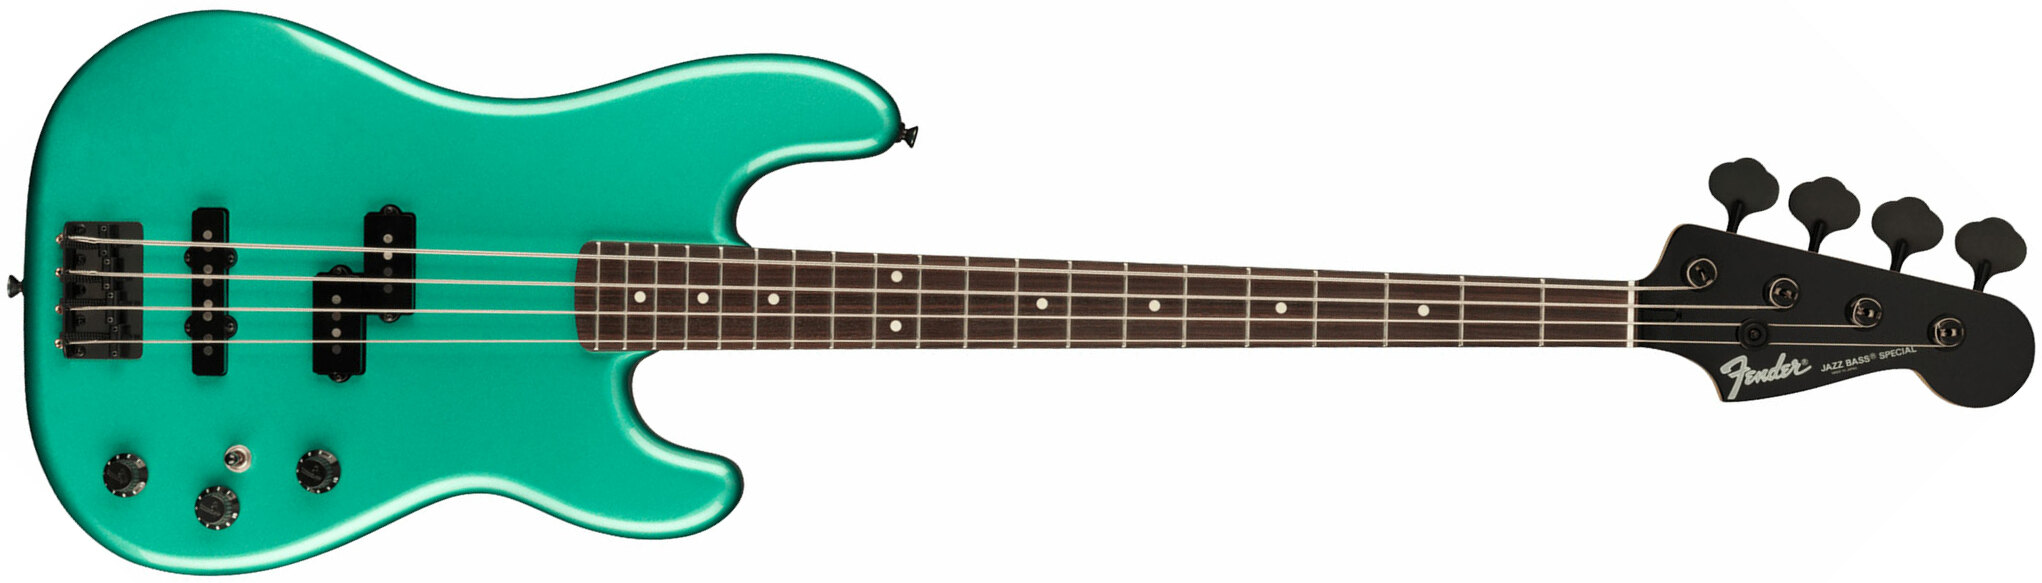 Fender Precision Bass Pj Boxer Jap Rw - Sherwood Green Metallic - Basse Électrique Solid Body - Main picture